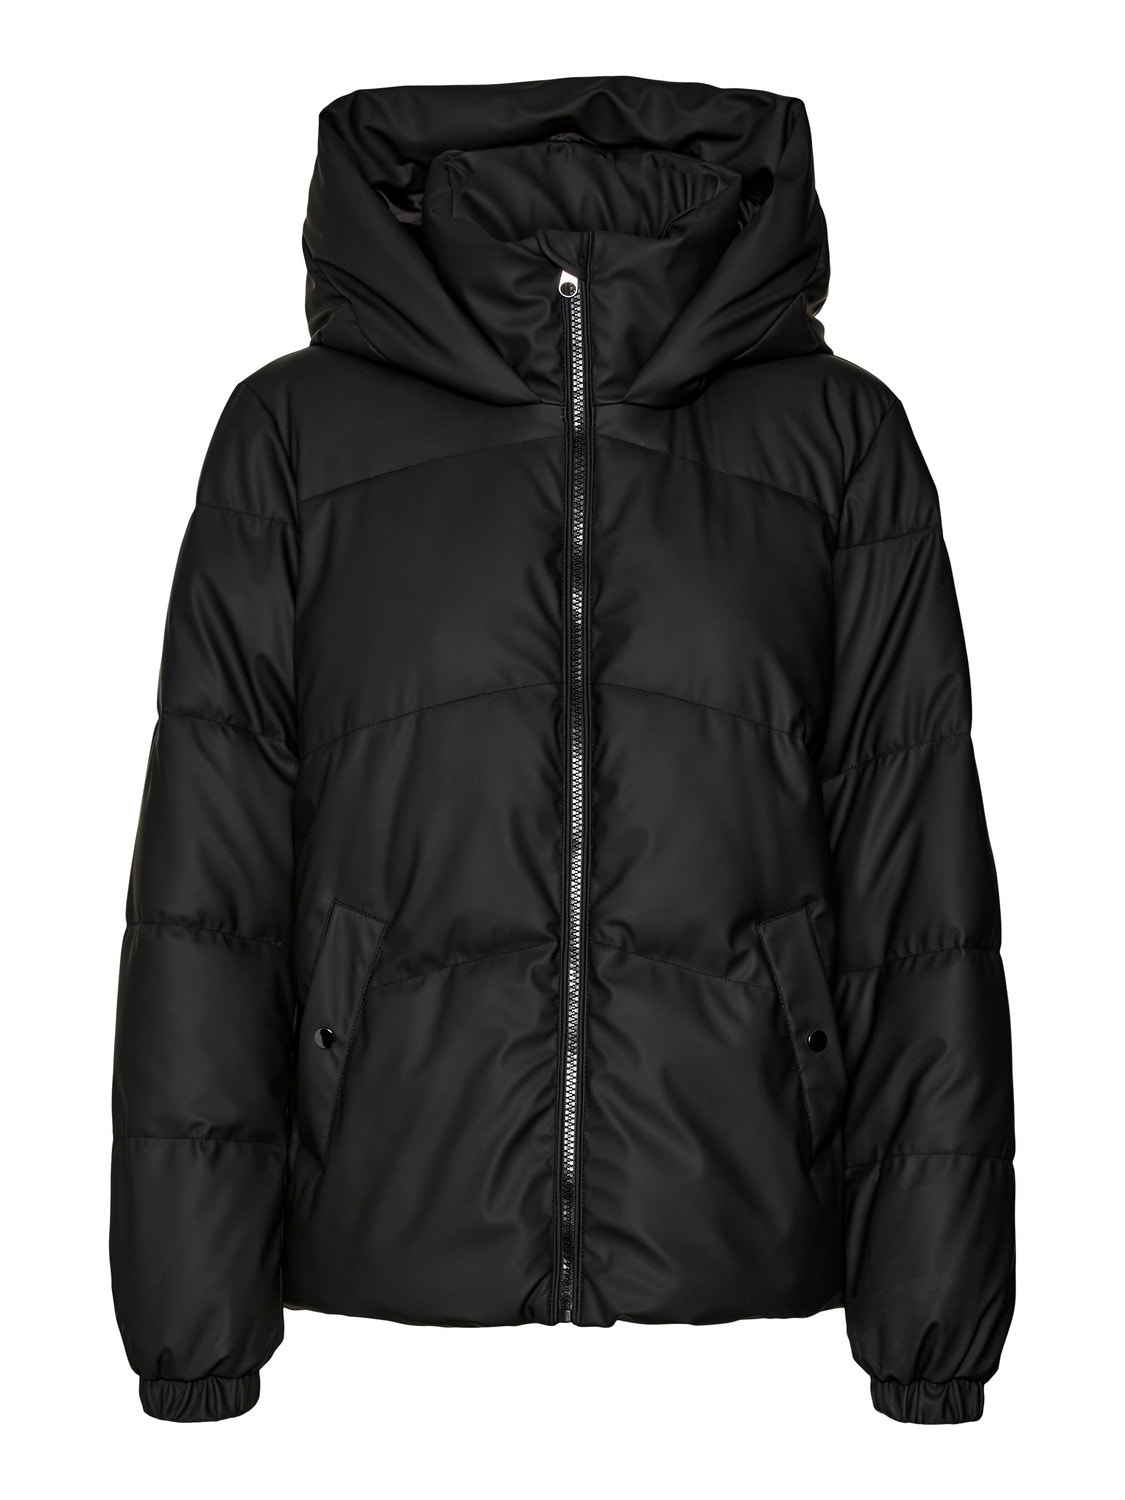 Vero Moda VMGRETAFIE Jacket -Black - 10275290